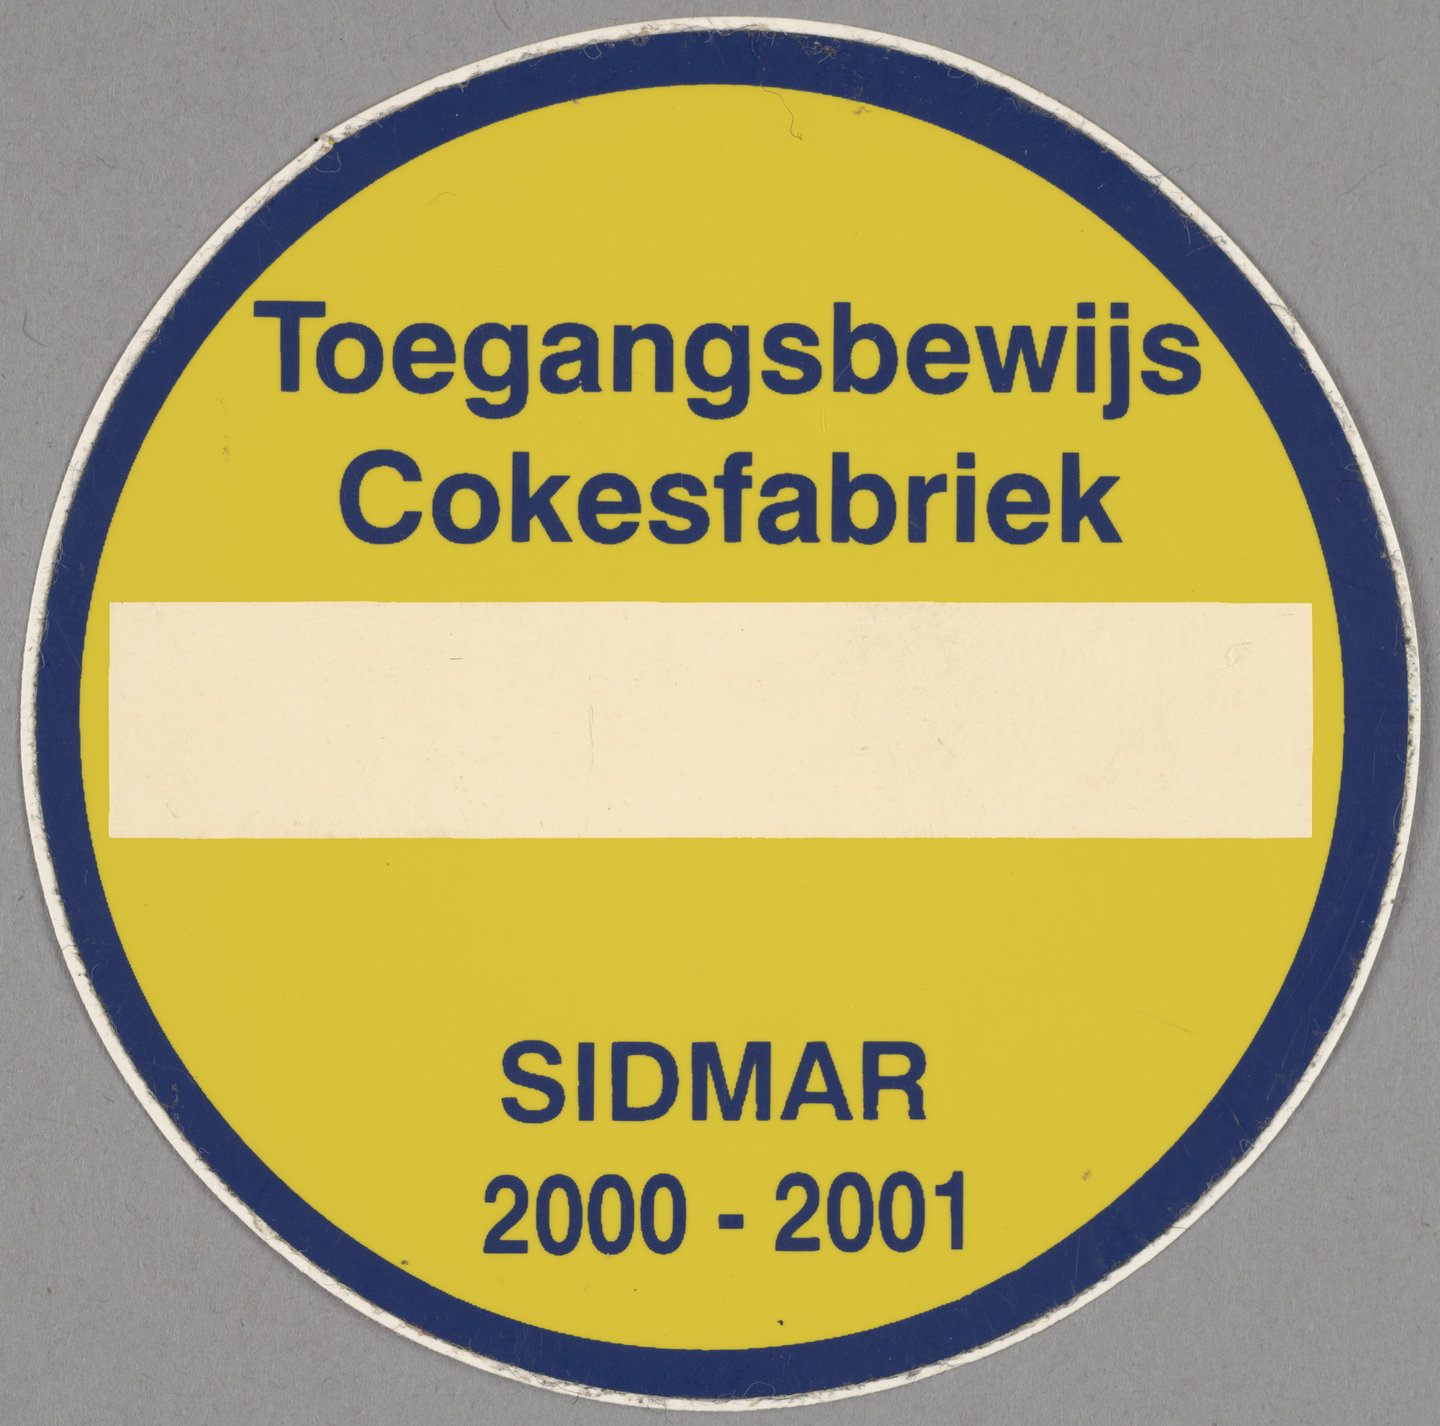 Toegangsbewijs voor cokesfabriek van staalbedrijf Sidmar in Gent